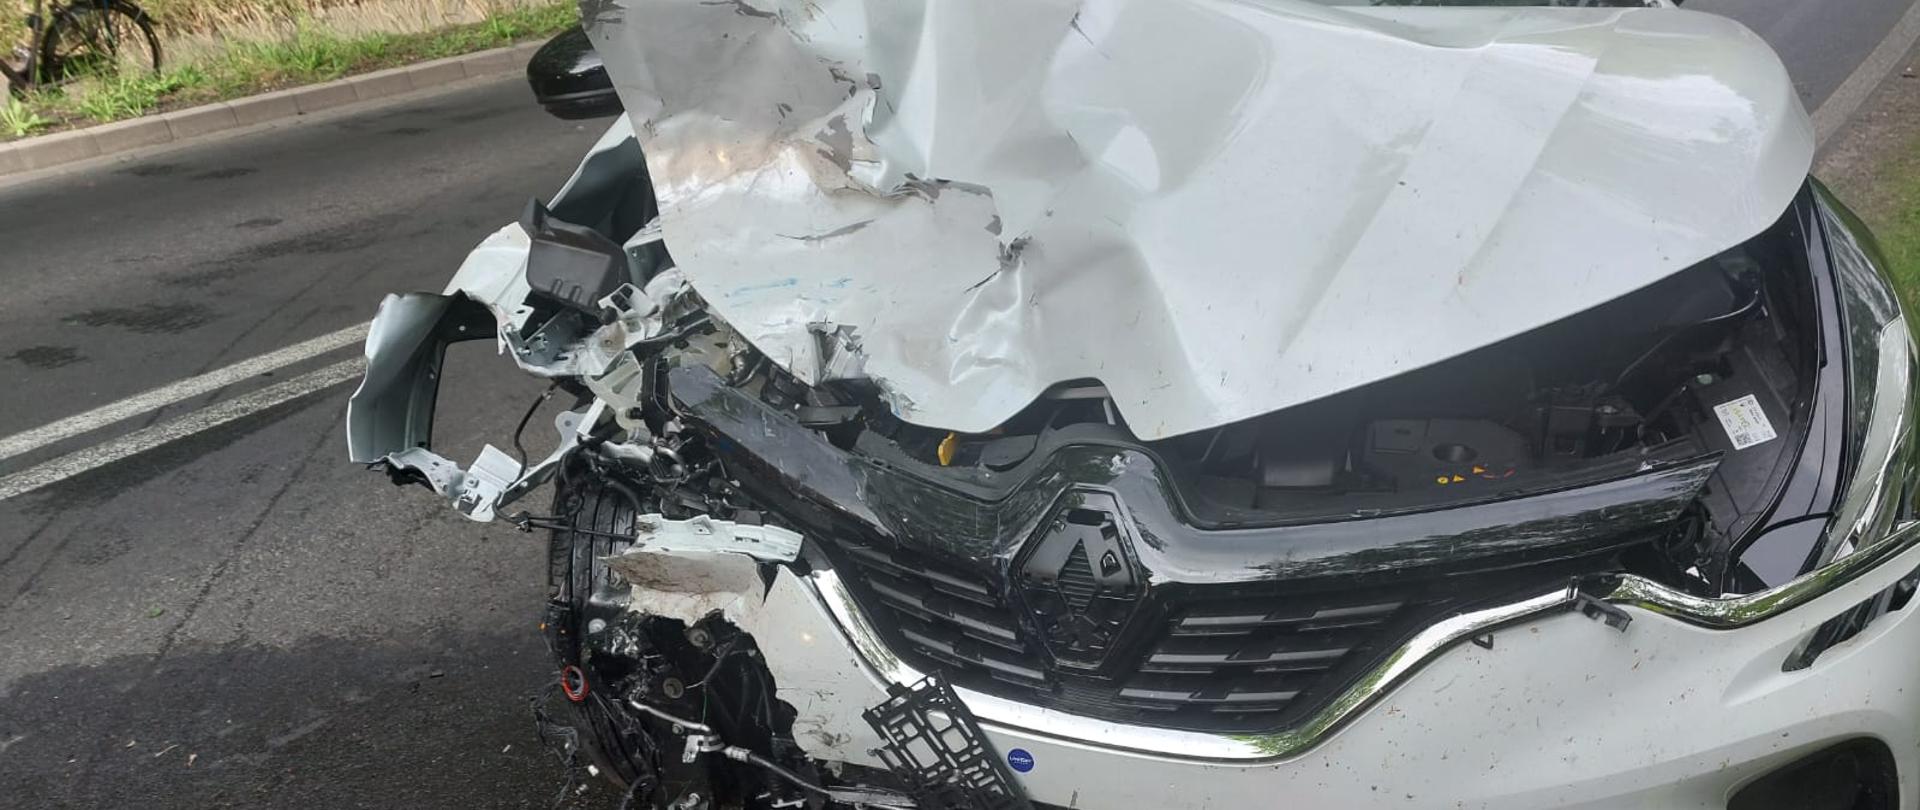 Zdjęcie przedstawia rozbity samochód po zderzeniu z motocyklem